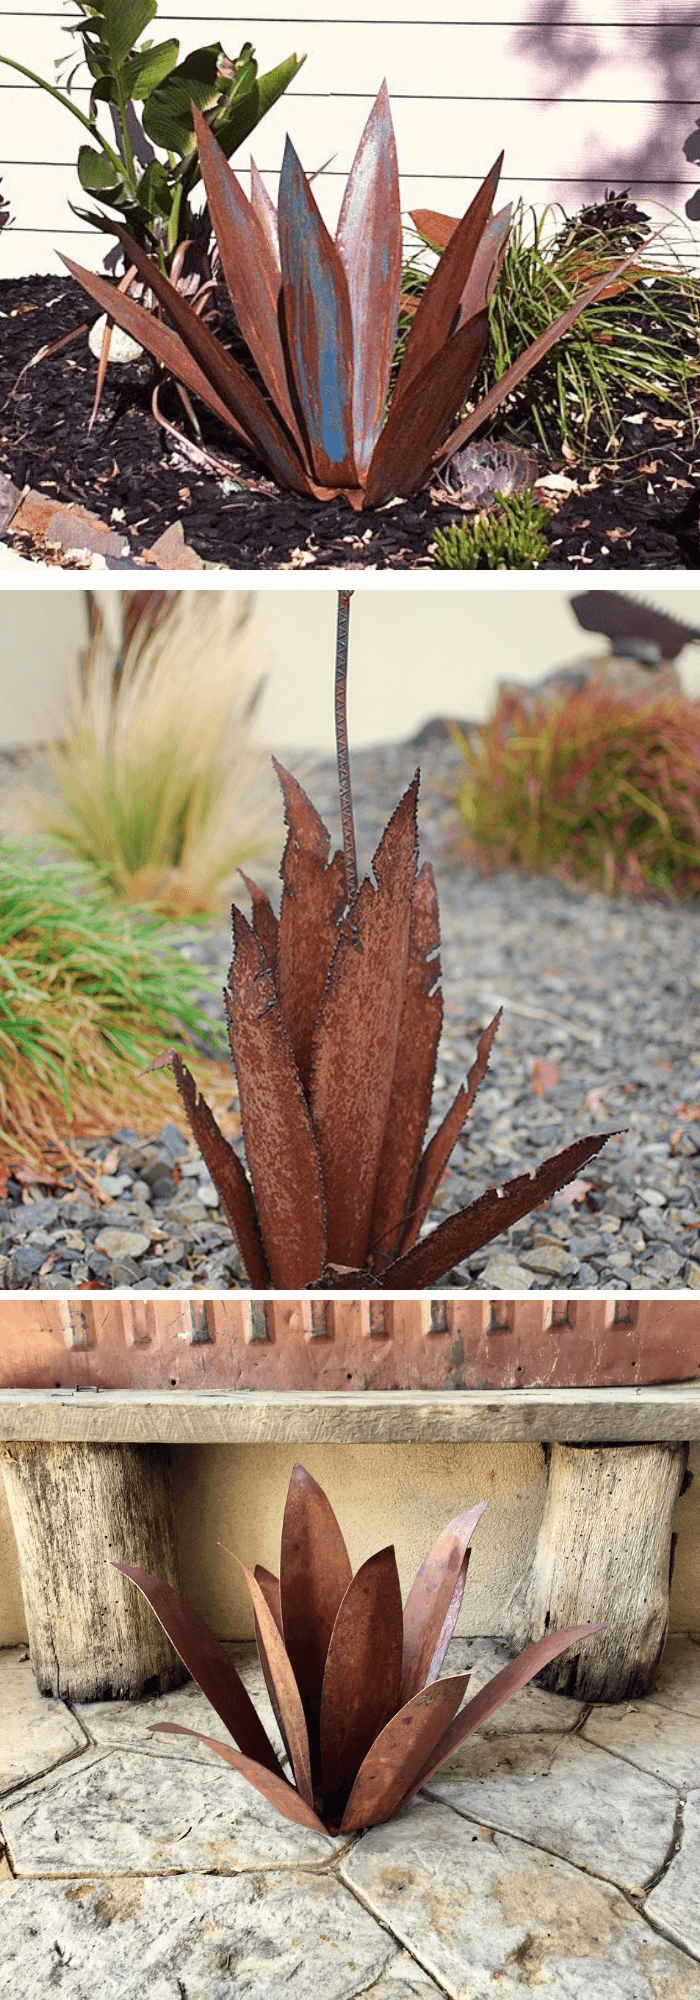 Rusty Metal garden DIY Ideas Metal sculpture